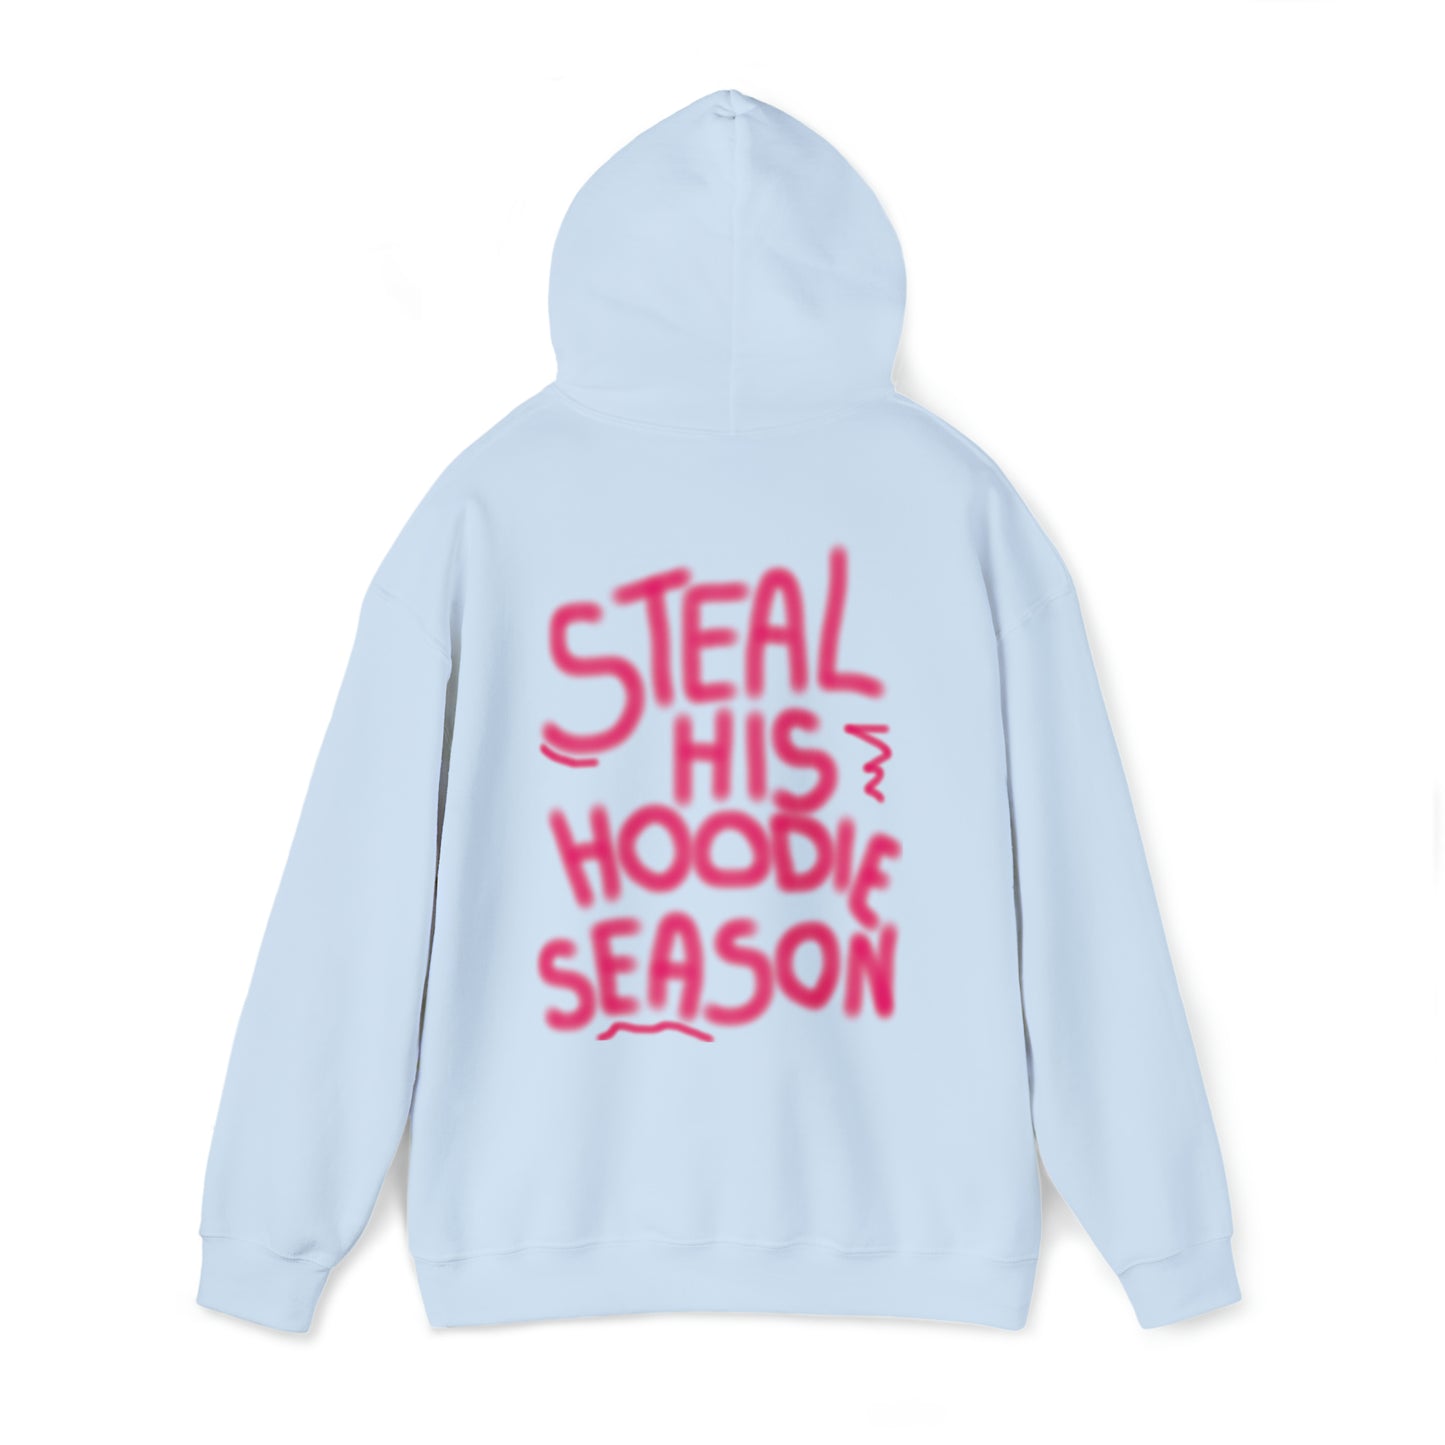 Steal his hoodie season